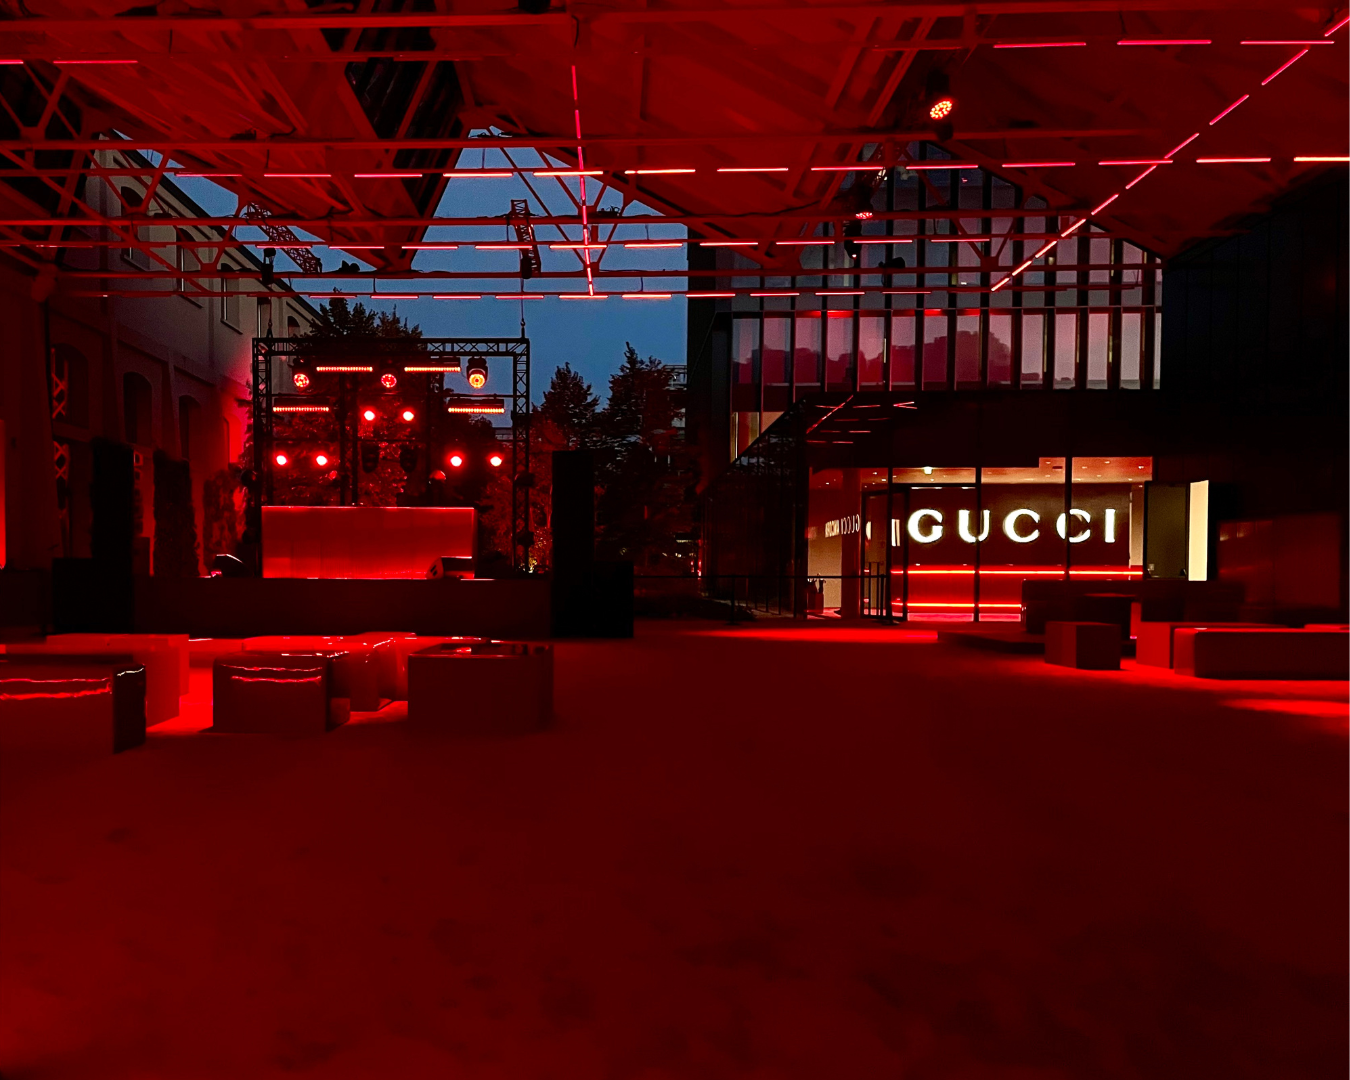 Gucci Ancora party a Milano